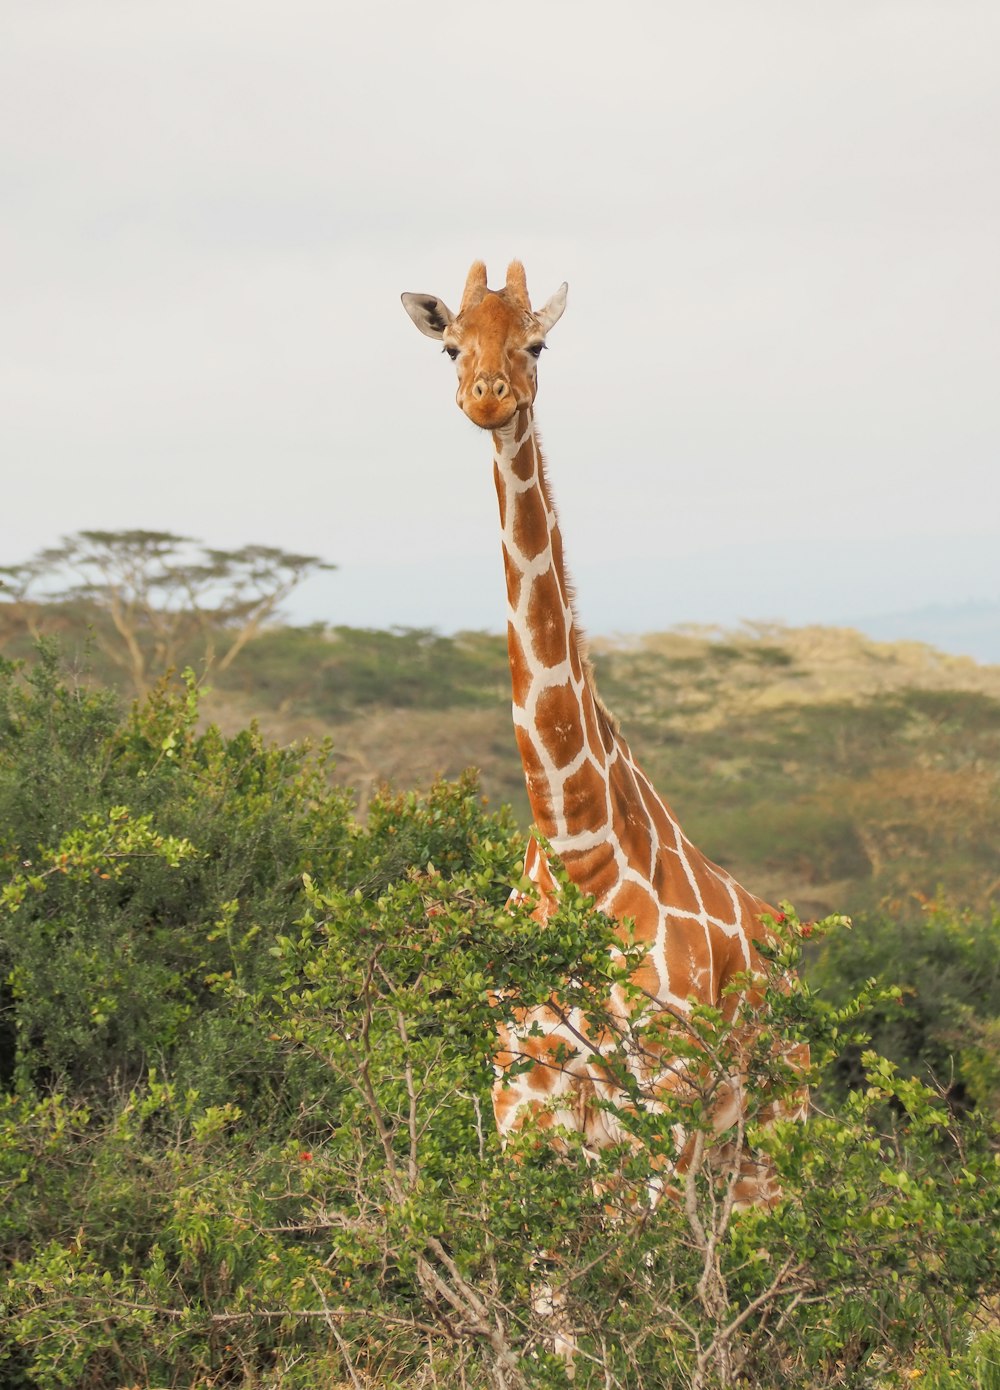 giraffe near trees during daytime